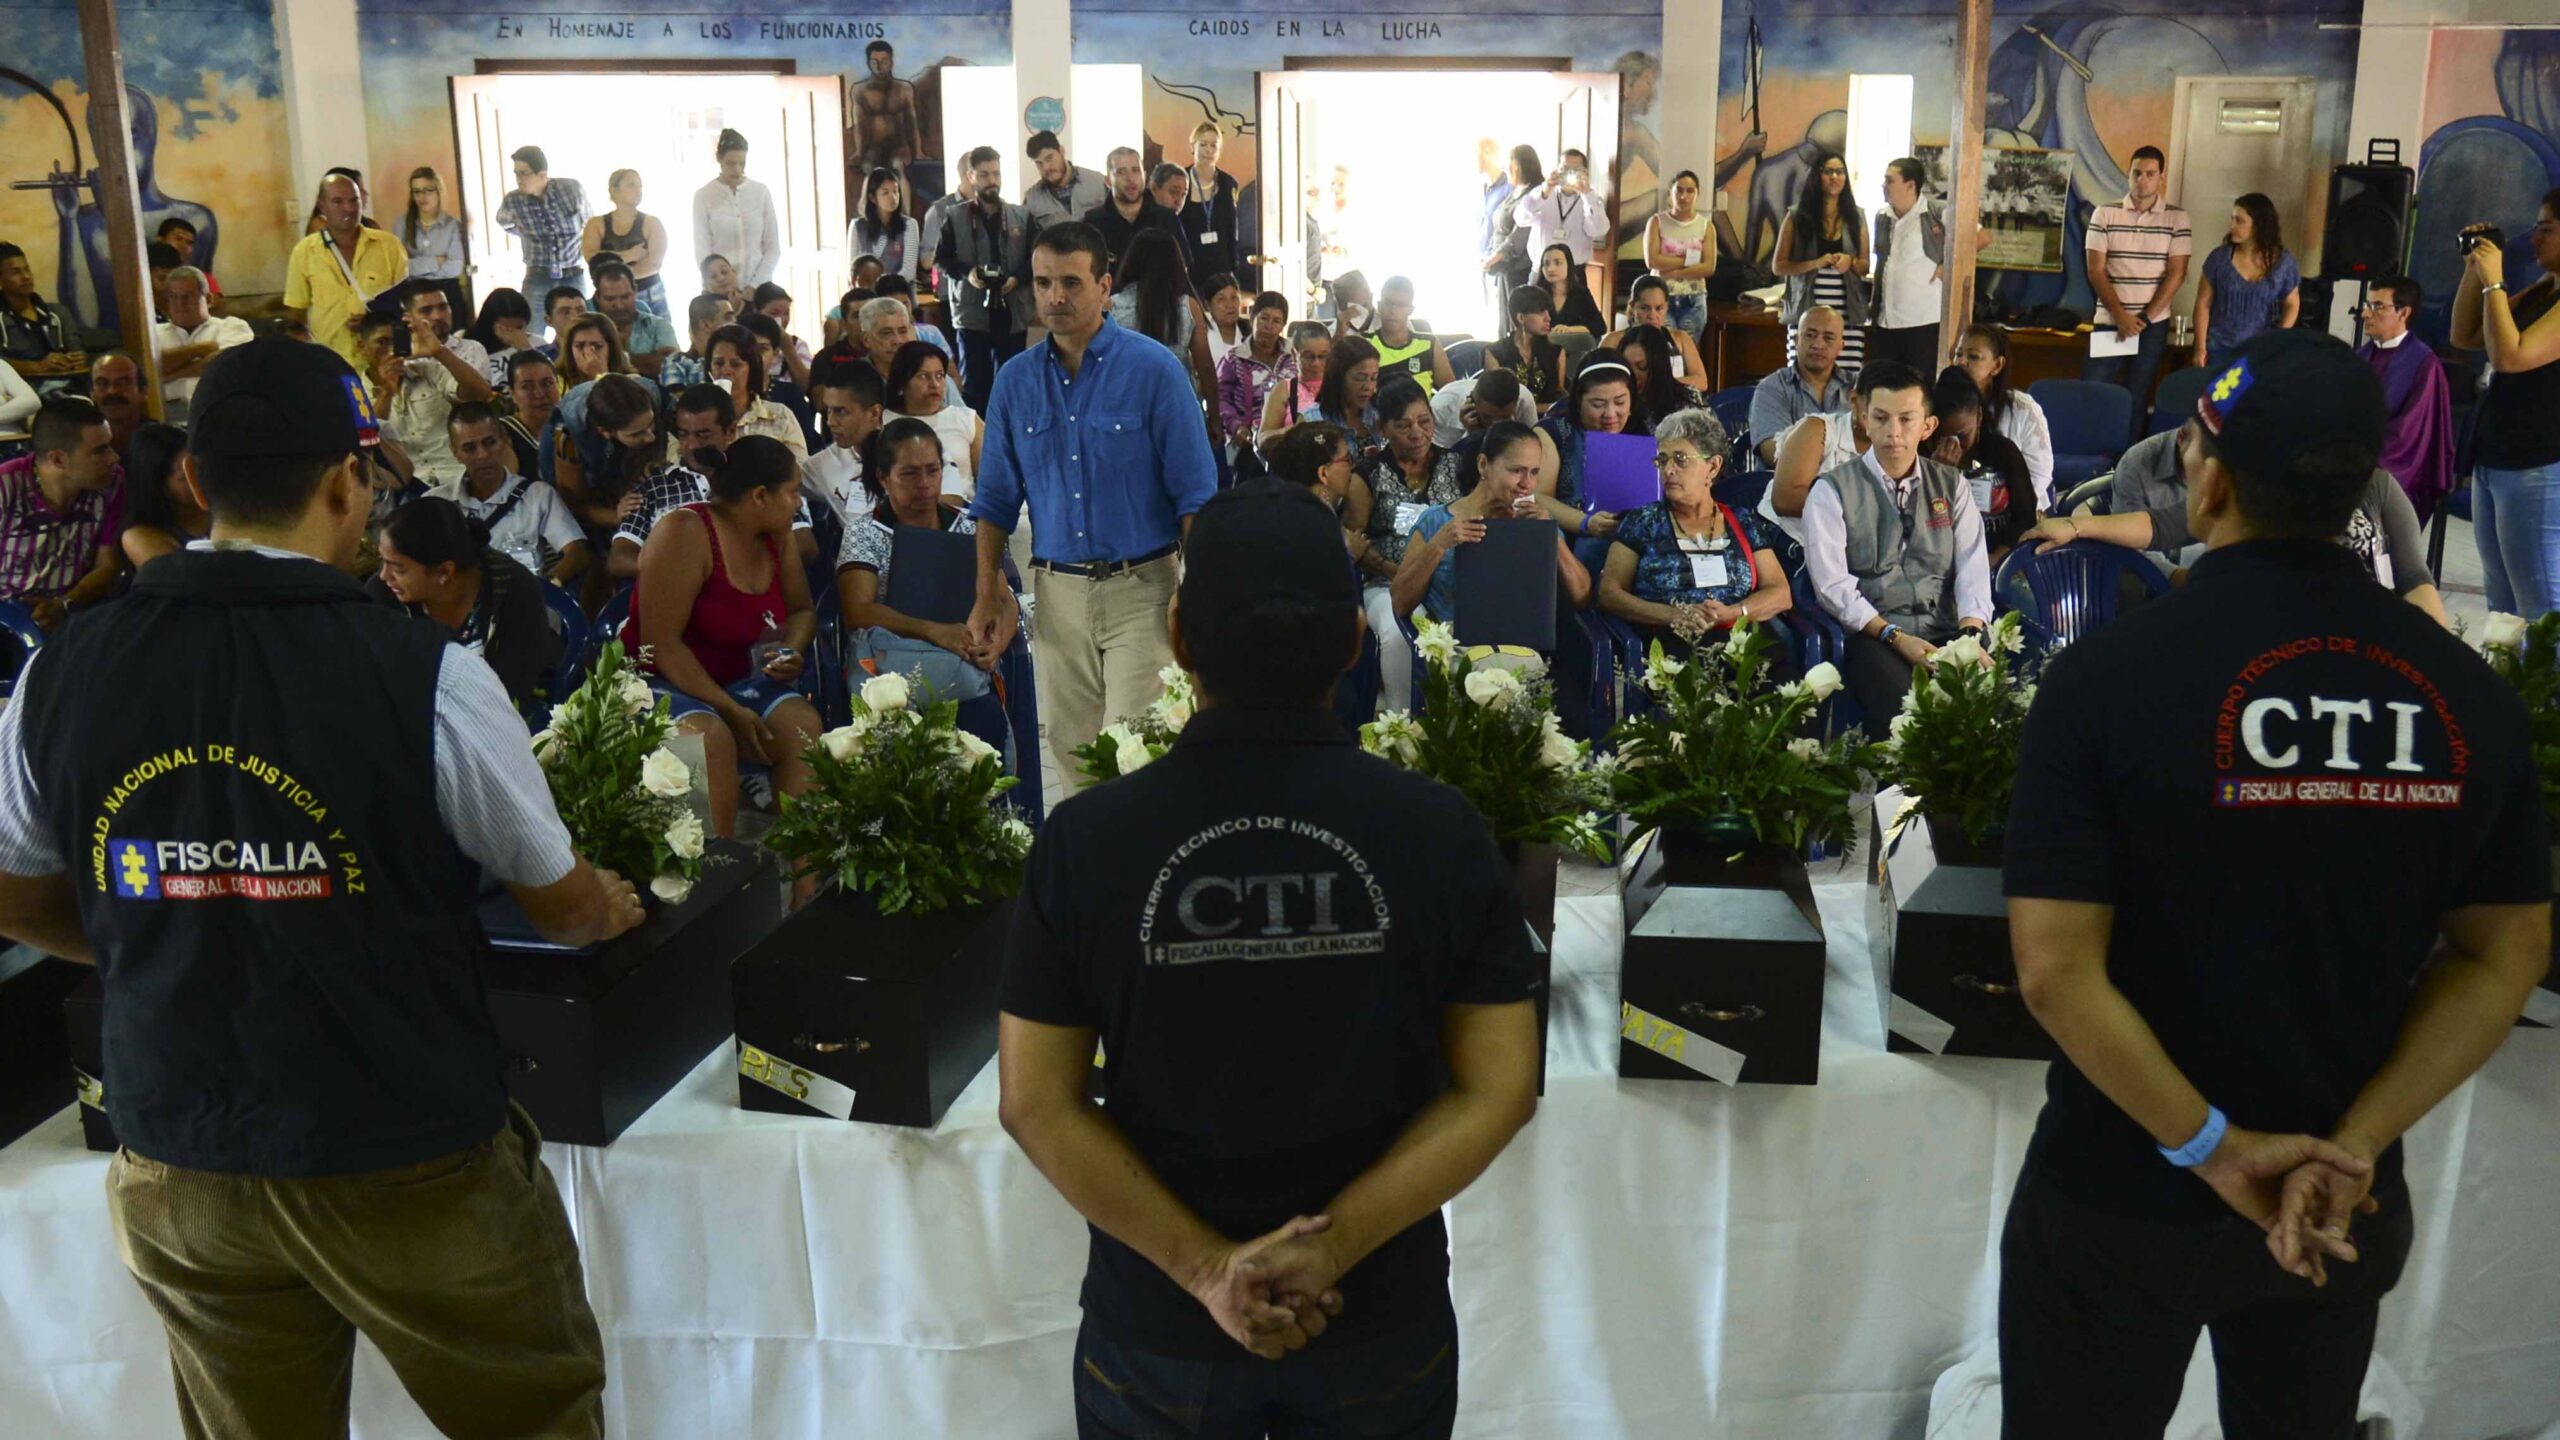 Comisión de la Verdad: la presión de EEUU a Colombia ayudó a los crímenes como los “falsos positivos”